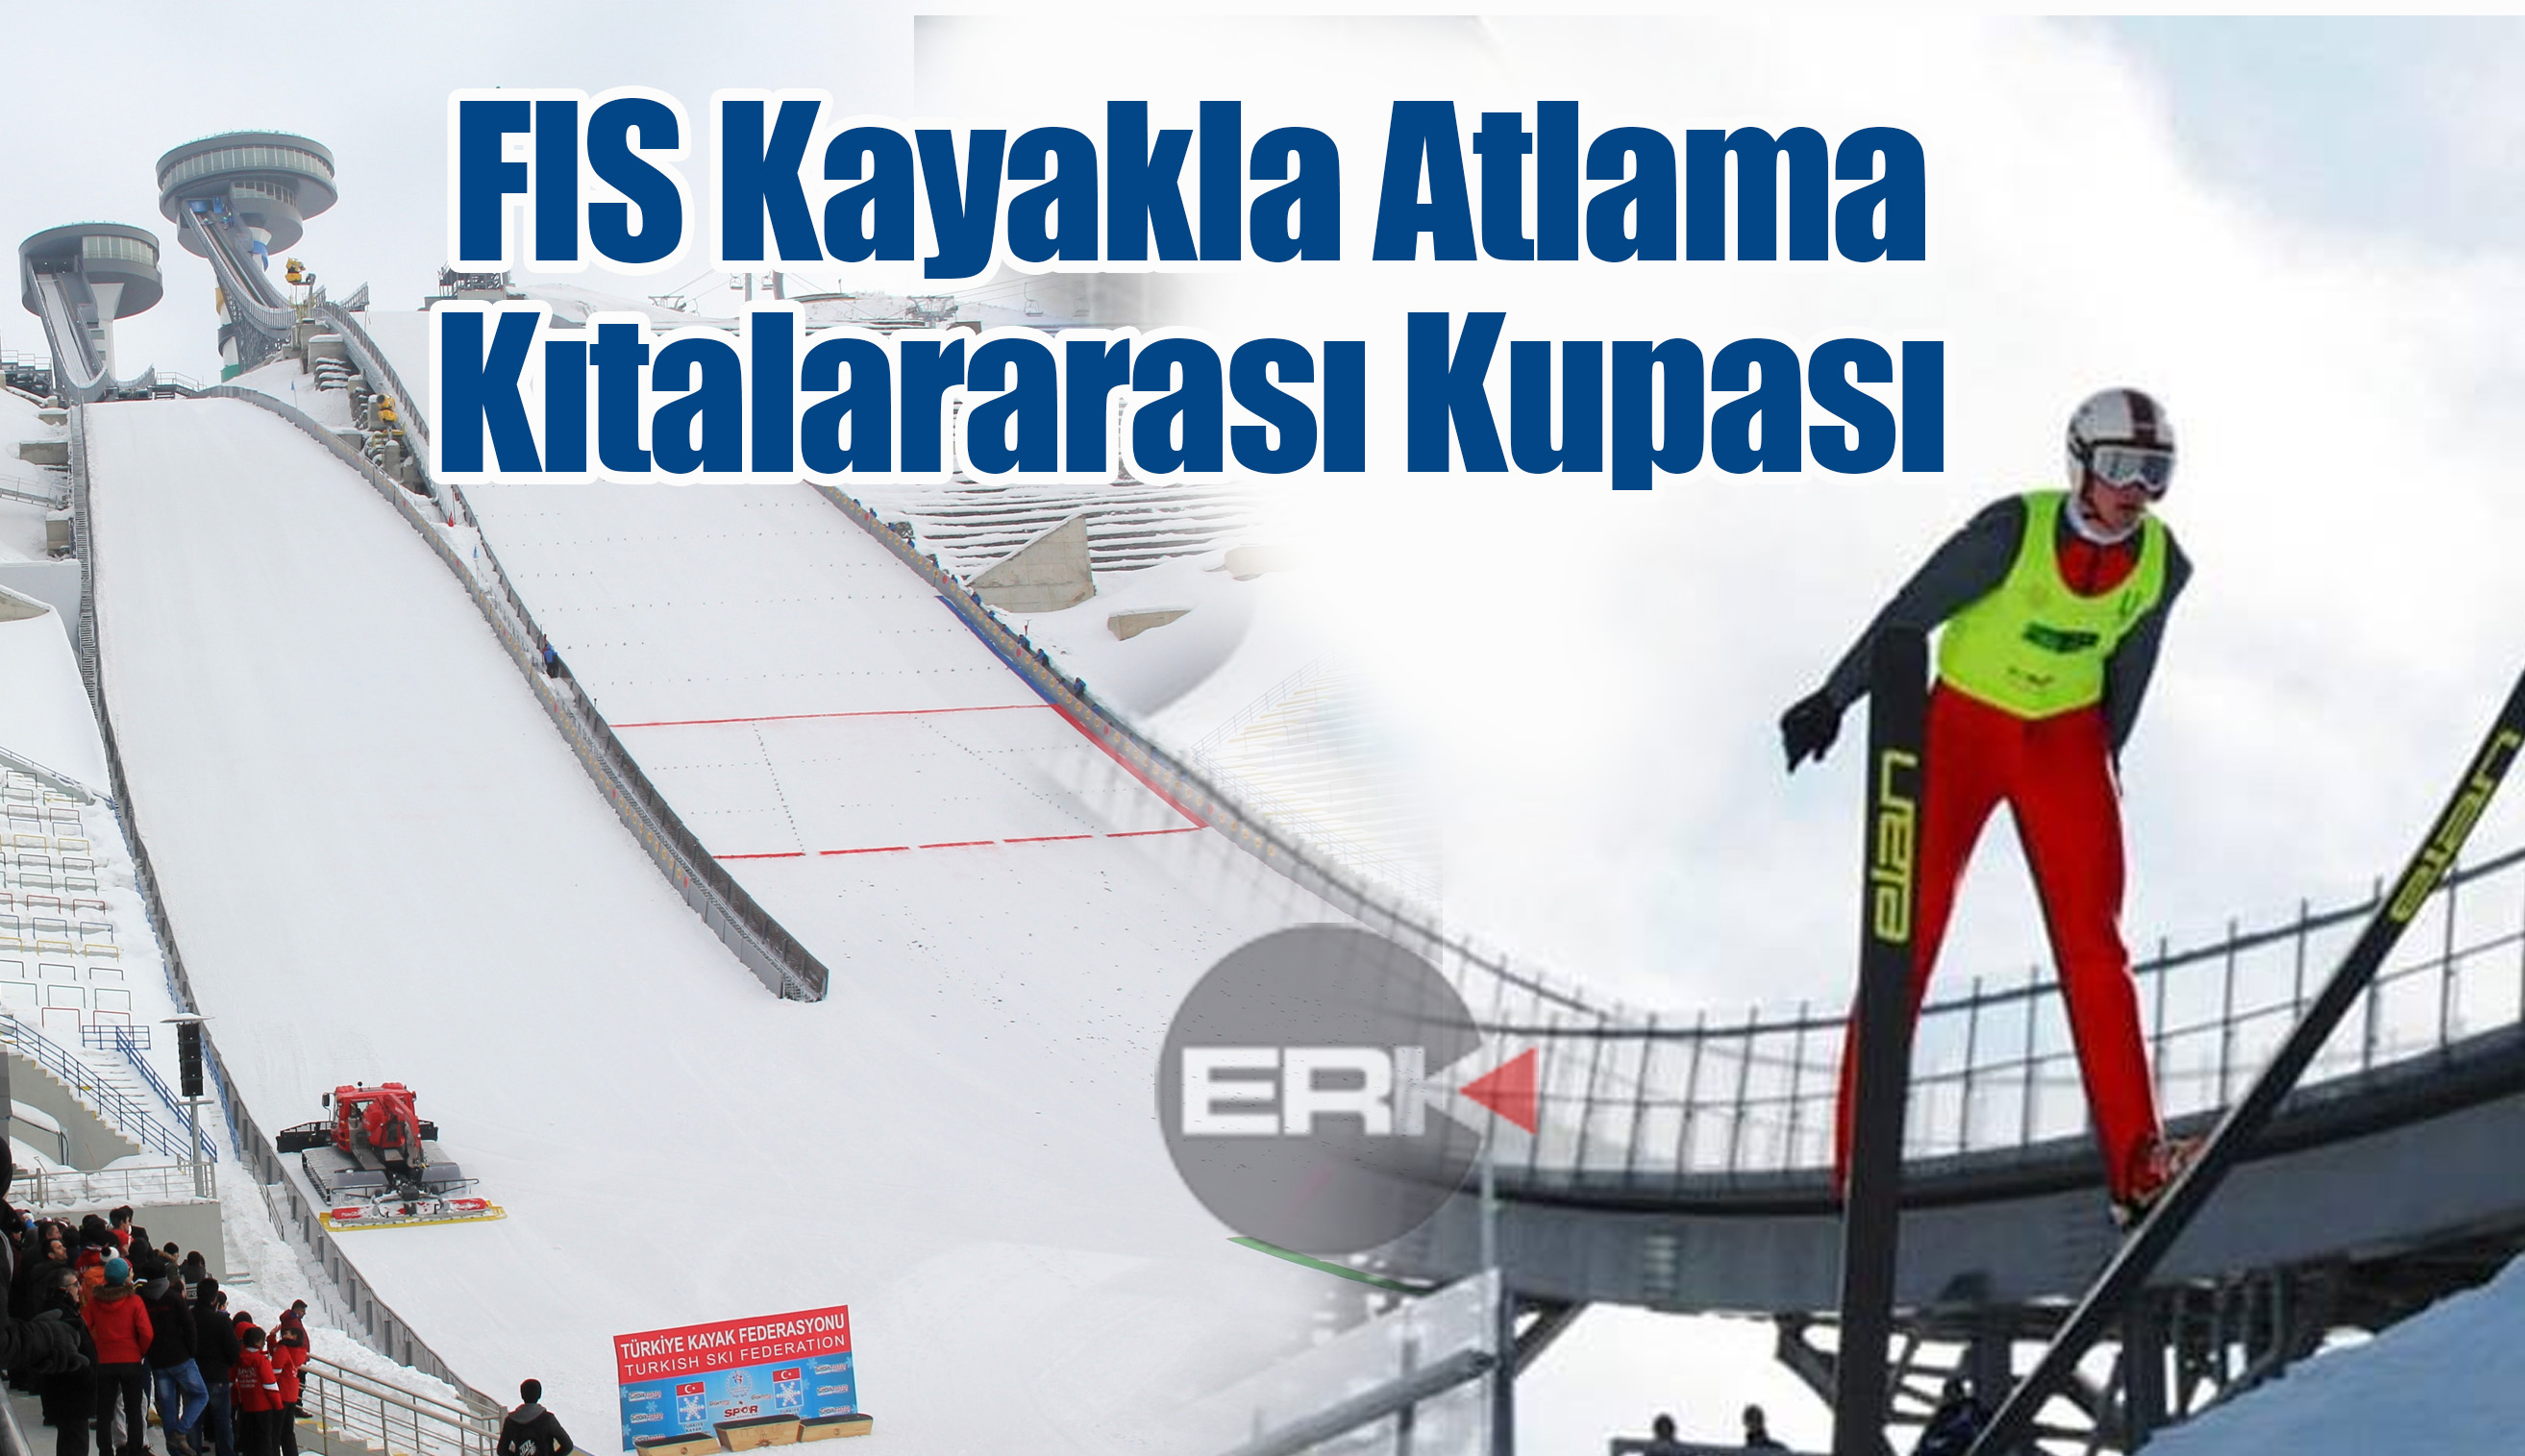  FIS Kayakla Atlama Kıtalararası Kupası